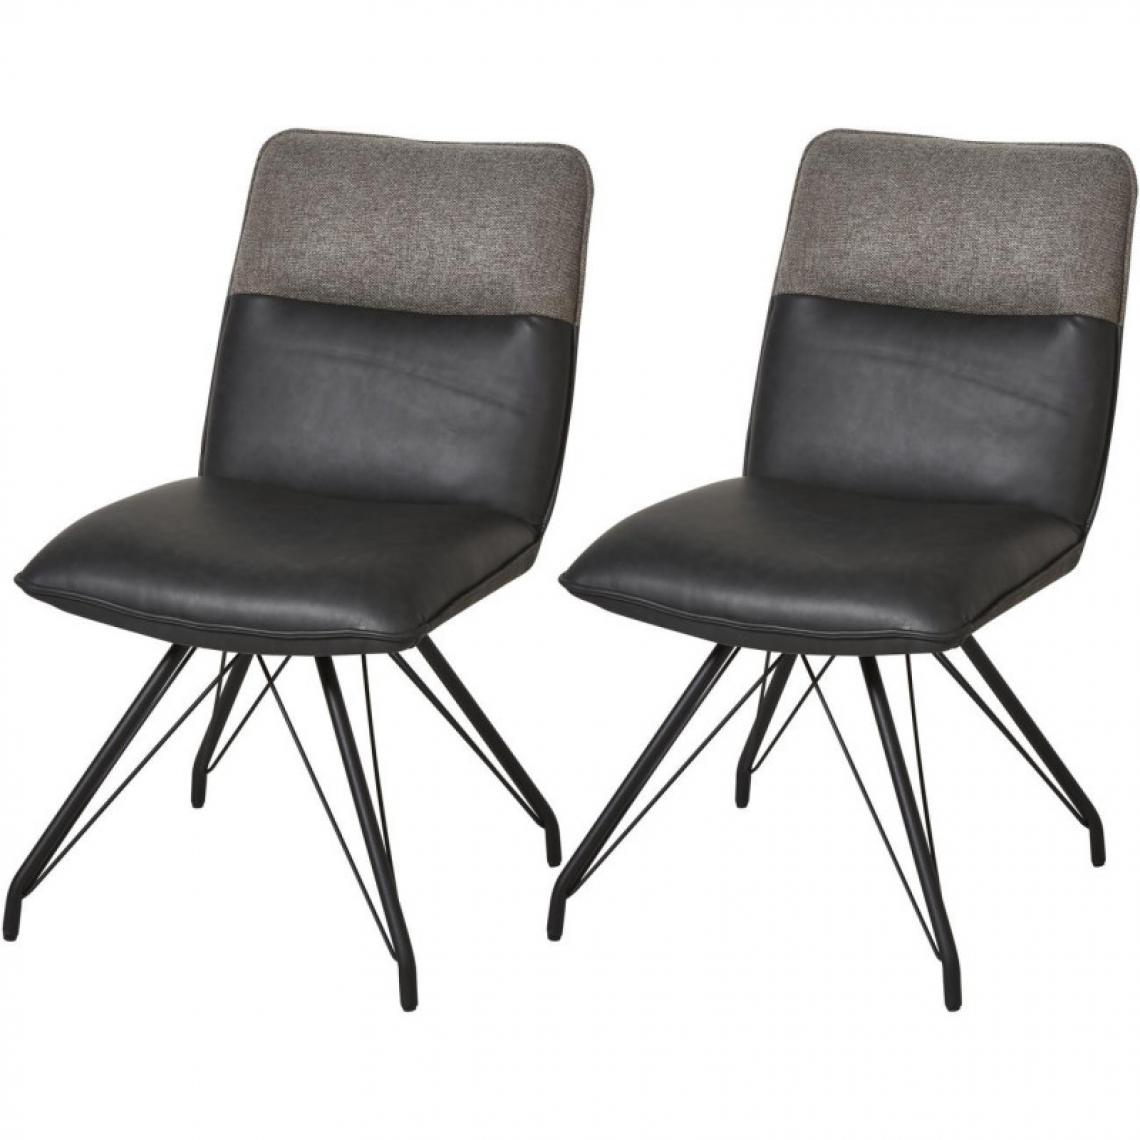 Ac-Deco - Lot de 2 chaises en cuir - Gillou - L 48,5 x l 67 x H 86,5 cm - Gris - Chaises